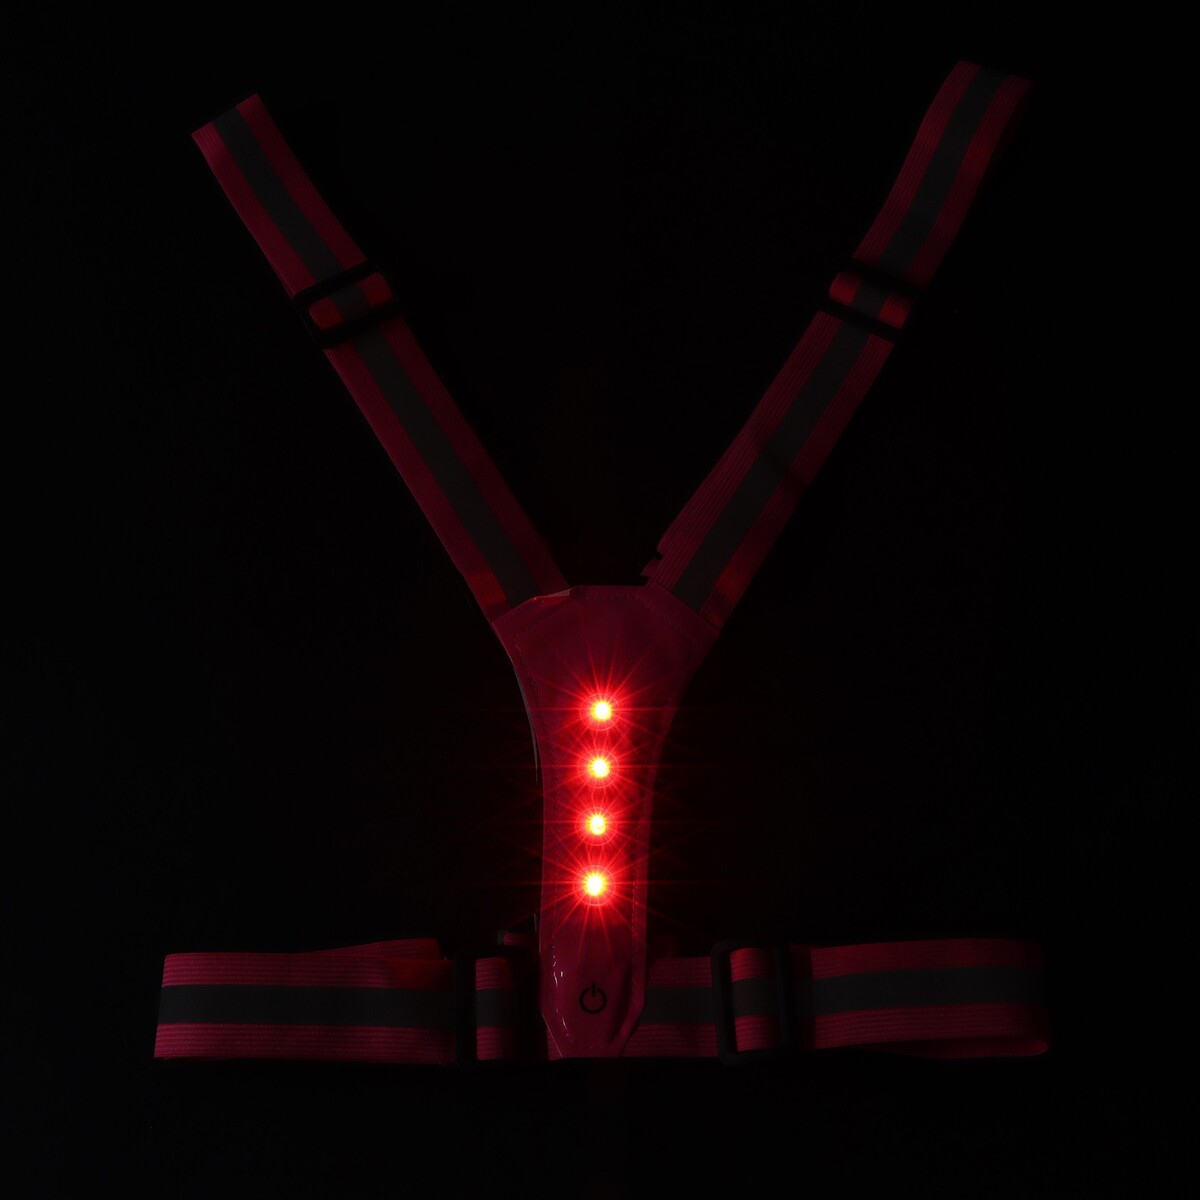 фото Жилет сигнальный, светоотражающий с регулируемым размером, розовый, led сигнал, 4 режима torso